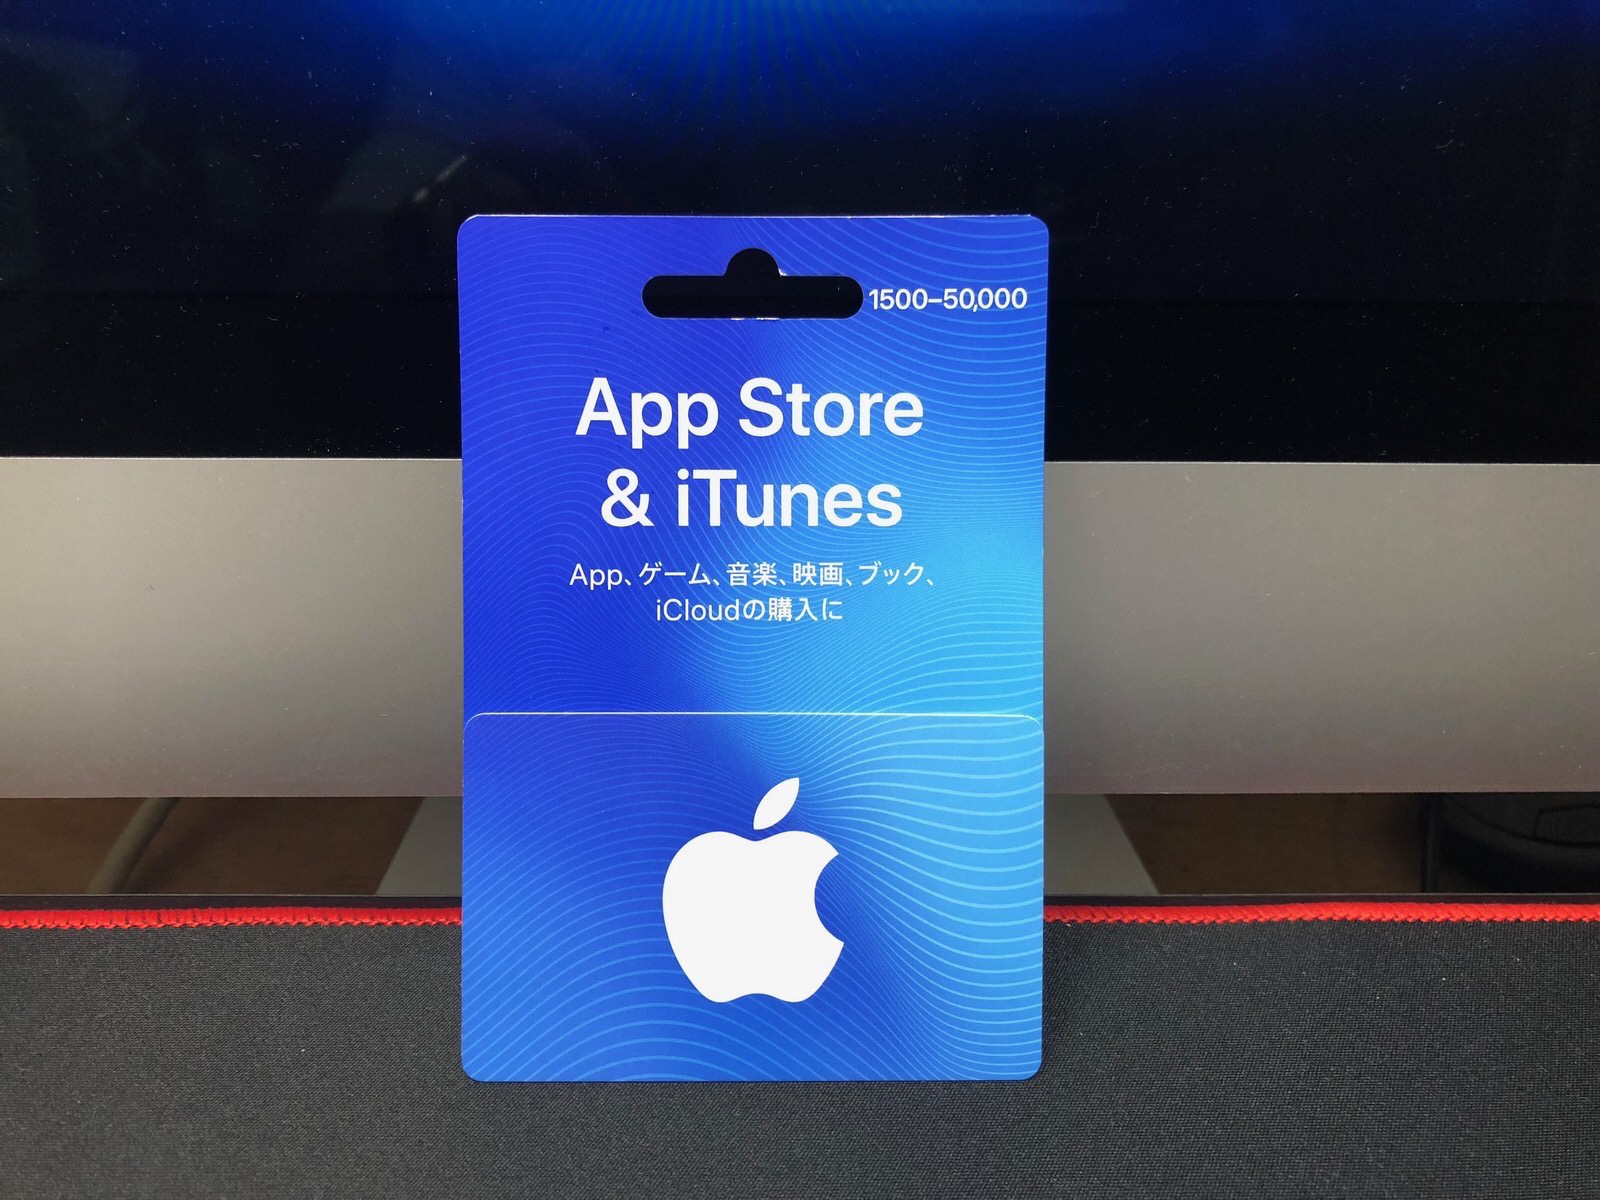 AppStore & iTunes-1